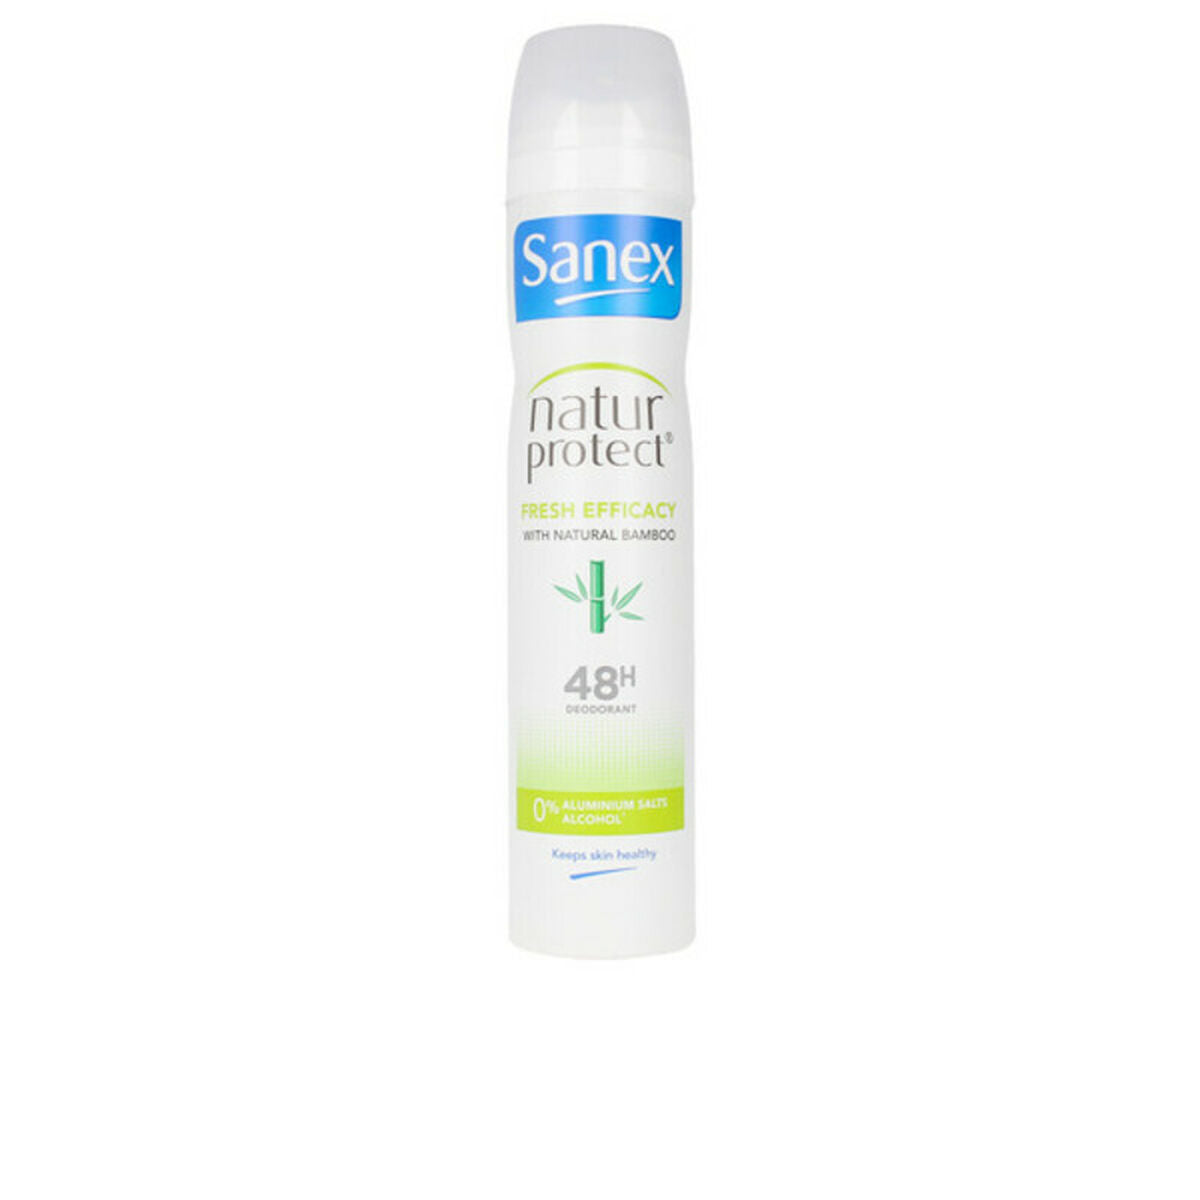 Razpršilna deodorant Natura Protect 0% svežega bambusa Sanex 124-7131 200 ml